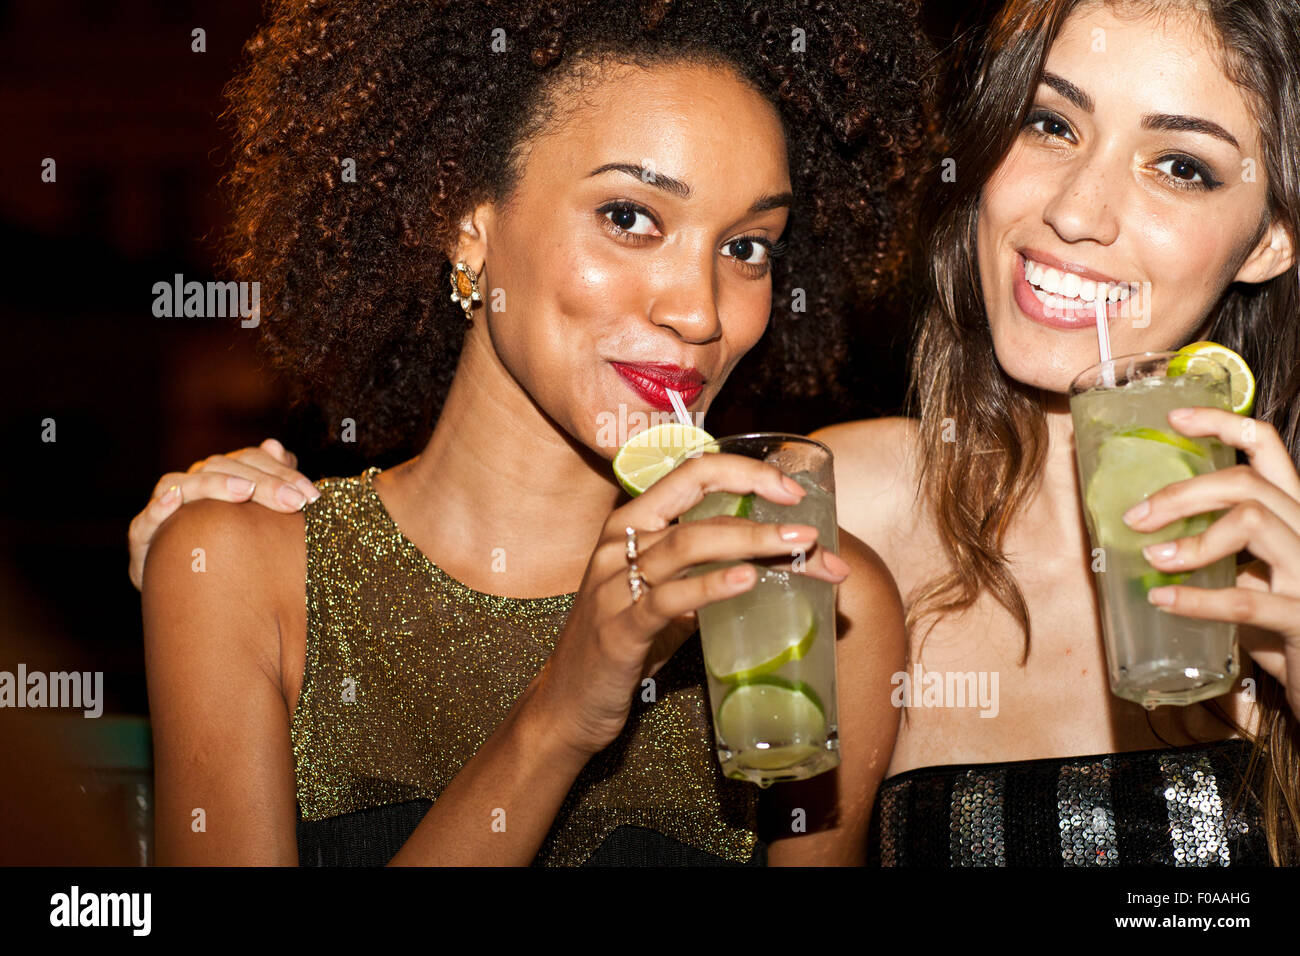 Deux jeunes femmes ensemble au bar, boire, smiling Banque D'Images